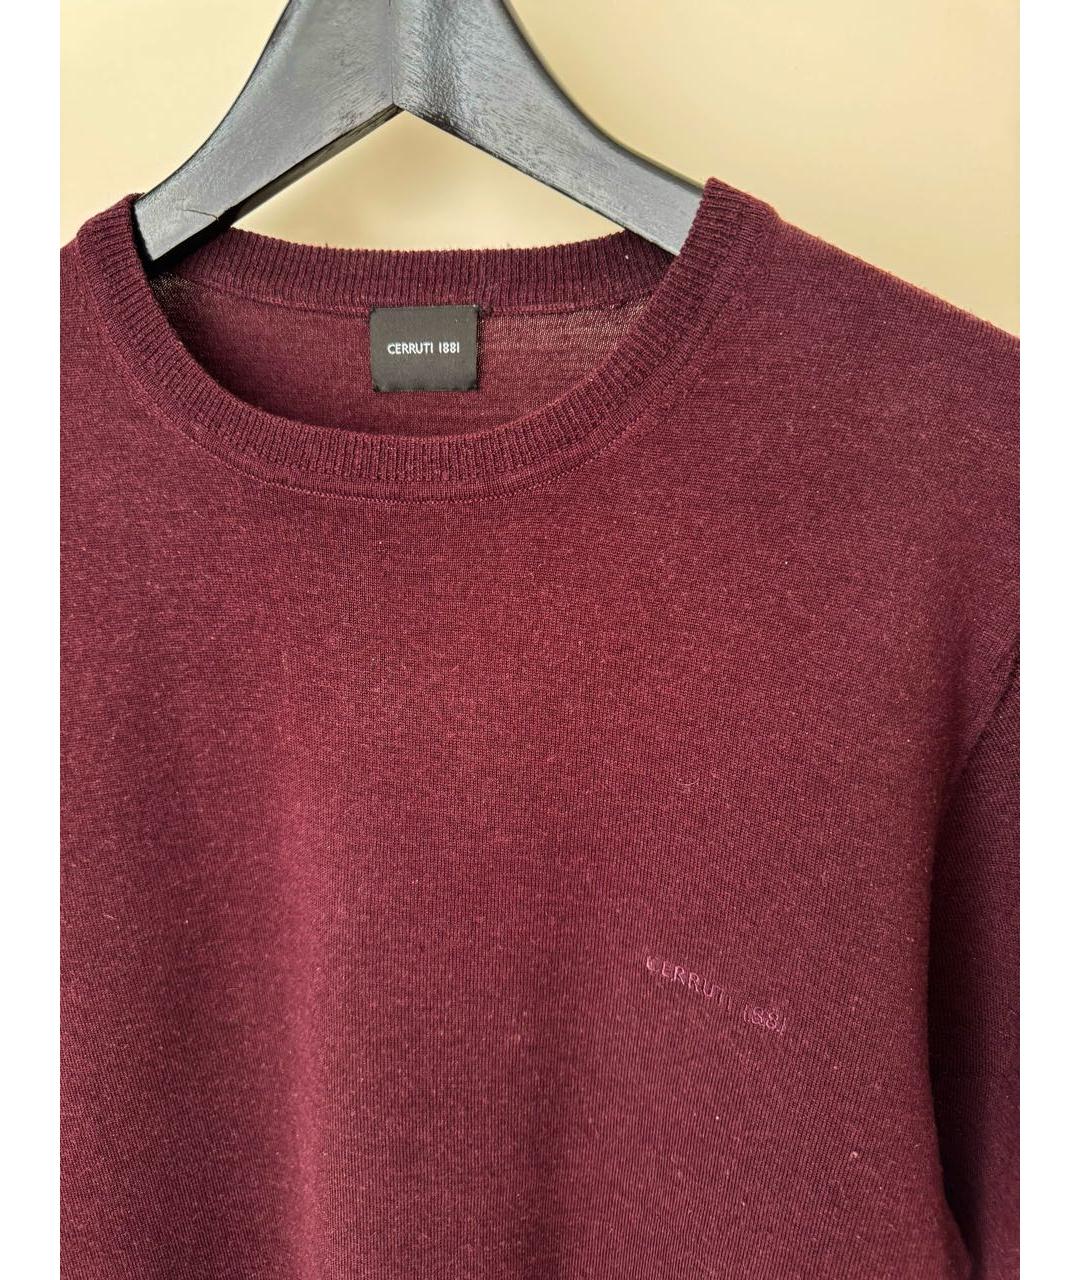 CERRUTI 1881 Бордовый шерстяной джемпер / свитер, фото 3